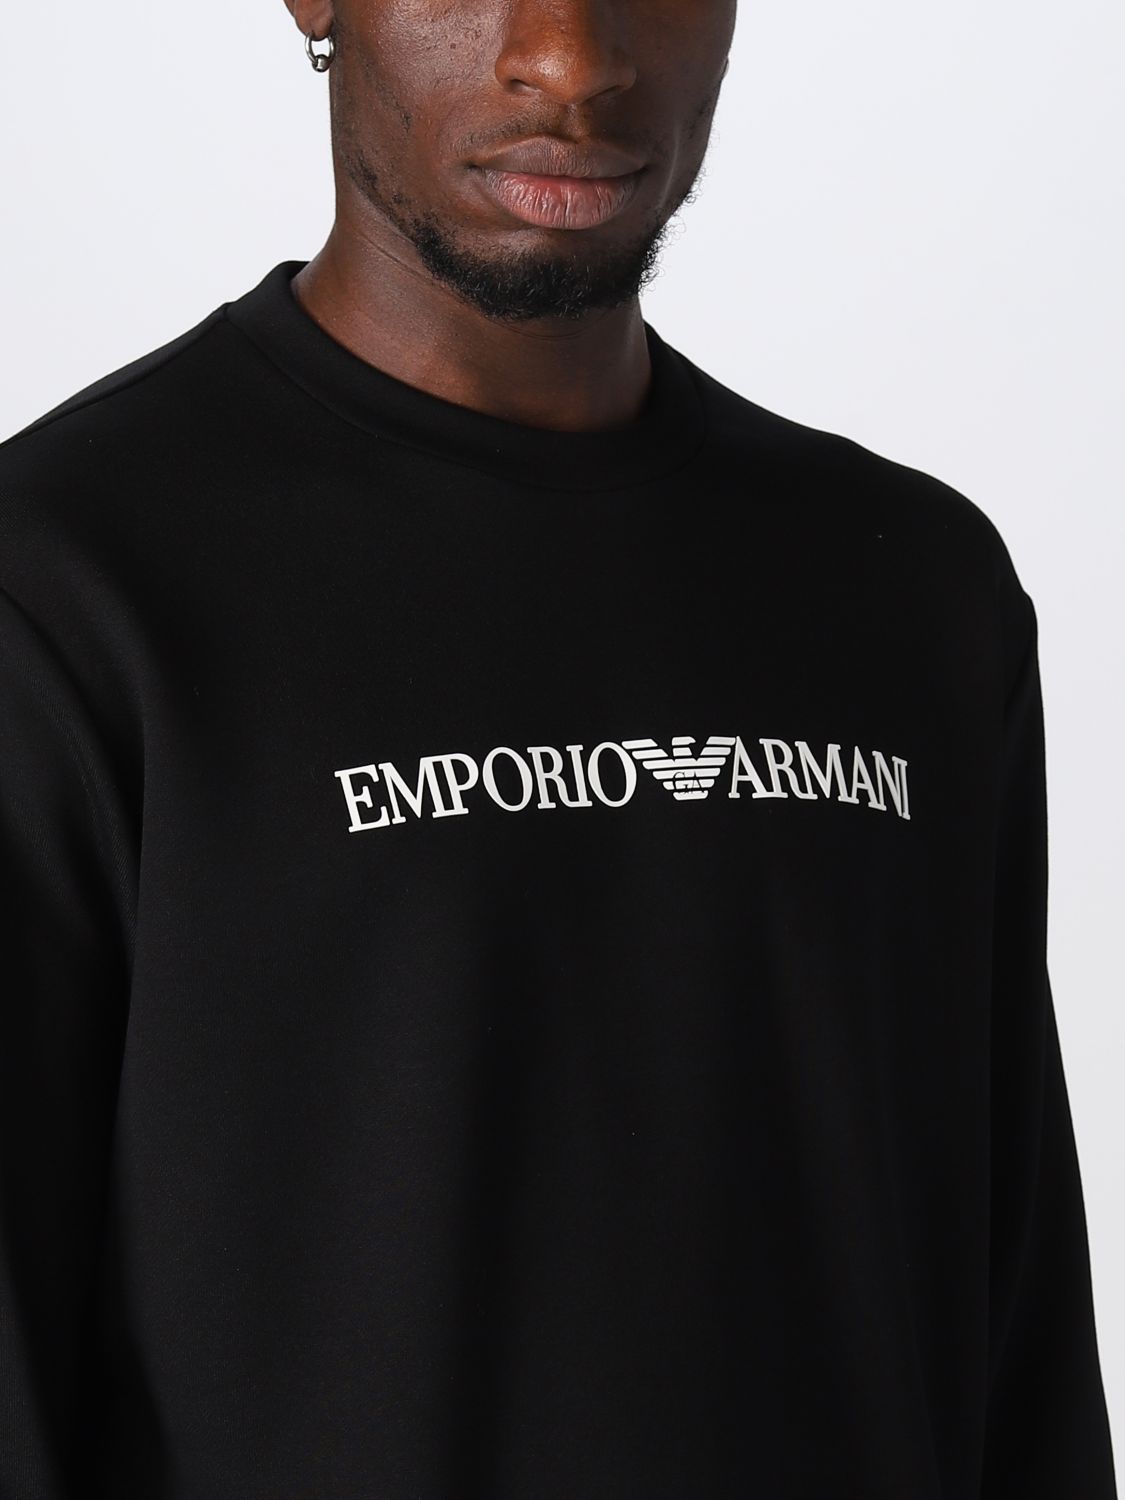 EMPORIO ARMANI: Sudadera para hombre, Negro Sudadera Emporio Armani 8N1MR61JRIZ en línea en GIGLIO.COM